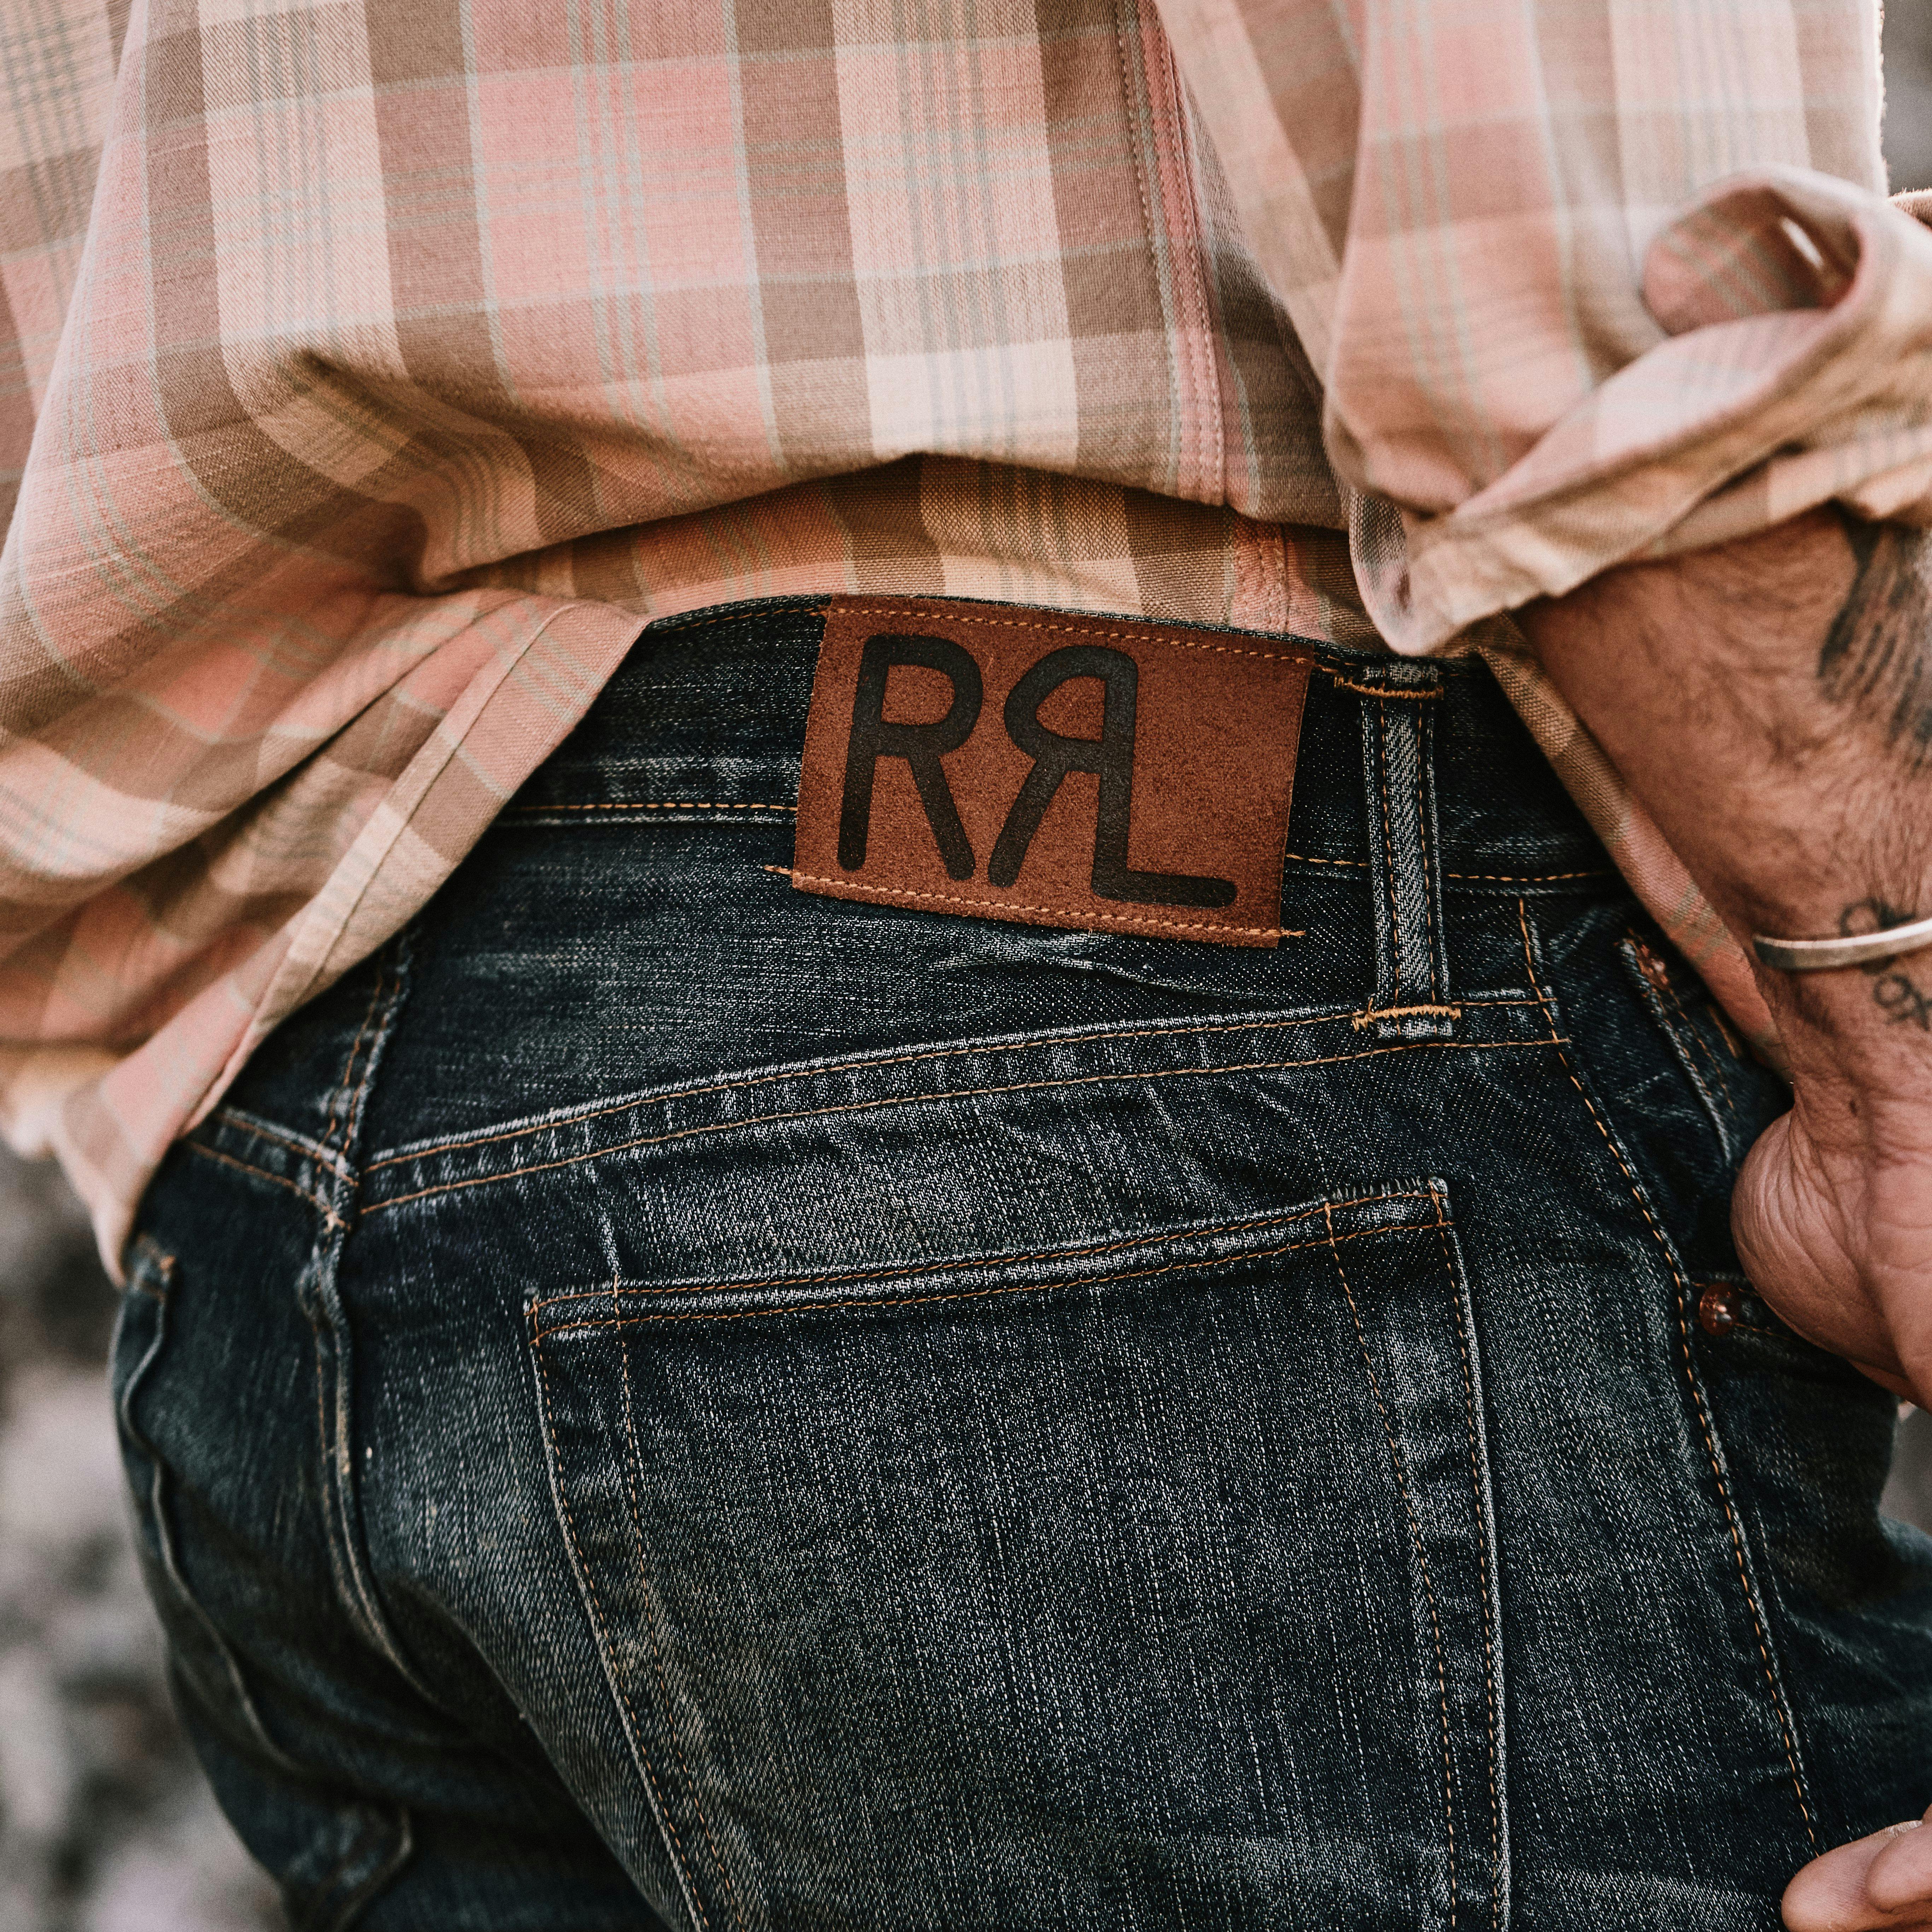 Ralph Lauren Men's Slim Fit Ridgecrest Selvedge Jean